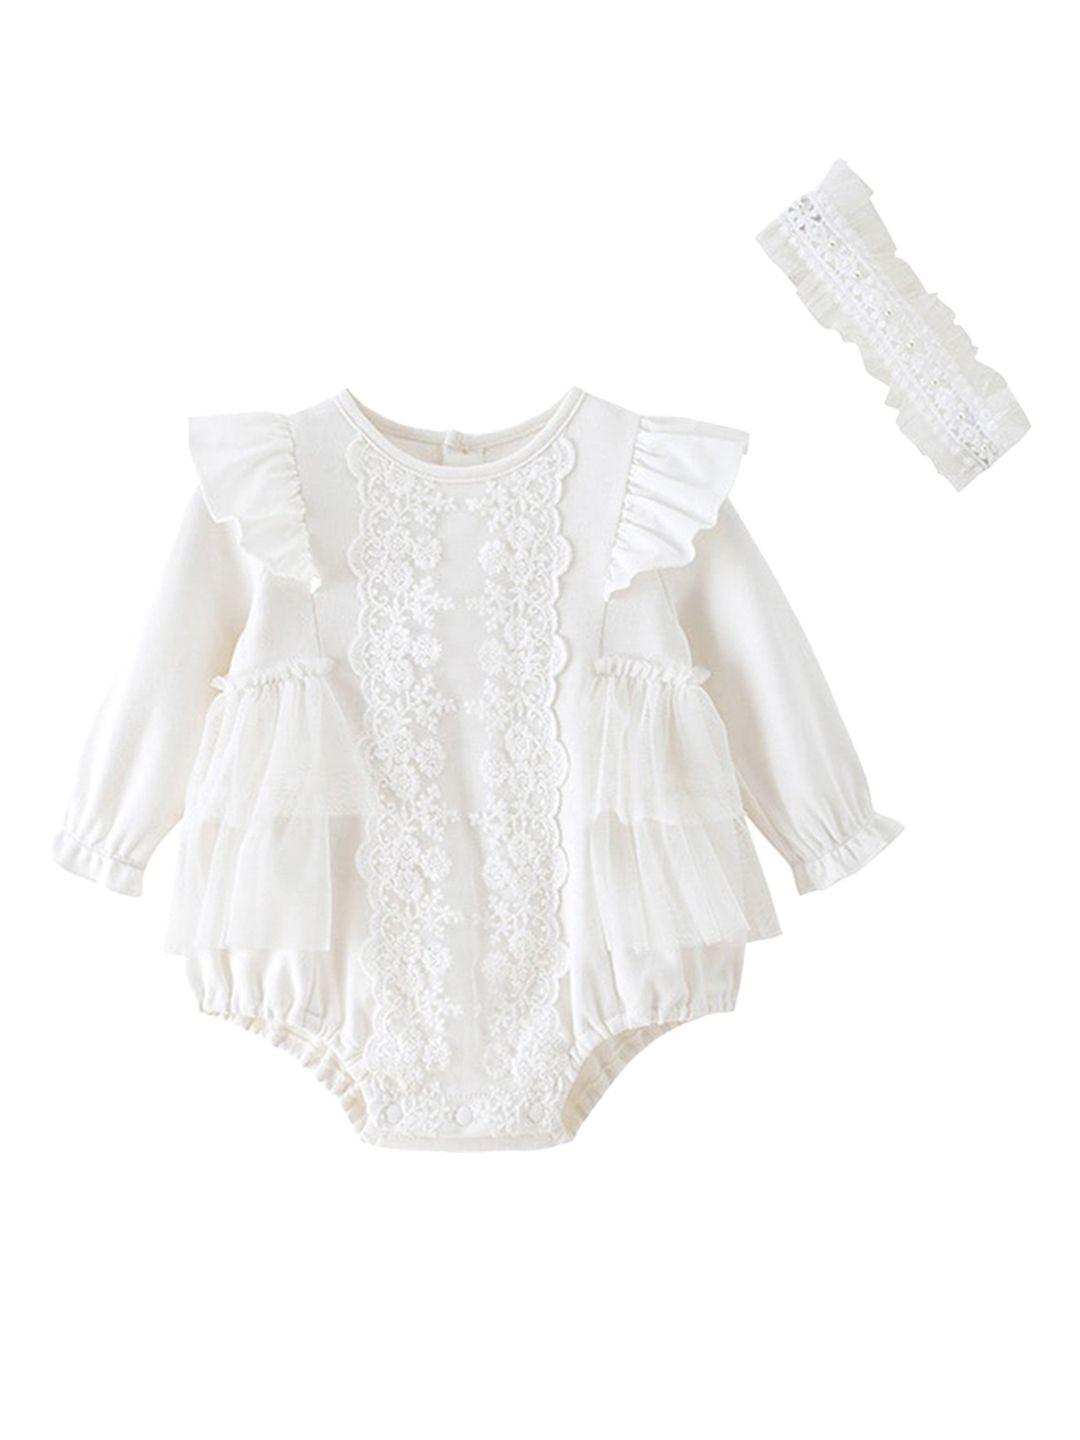 StyleCast White Infants Girls Self Design Cotton Romper